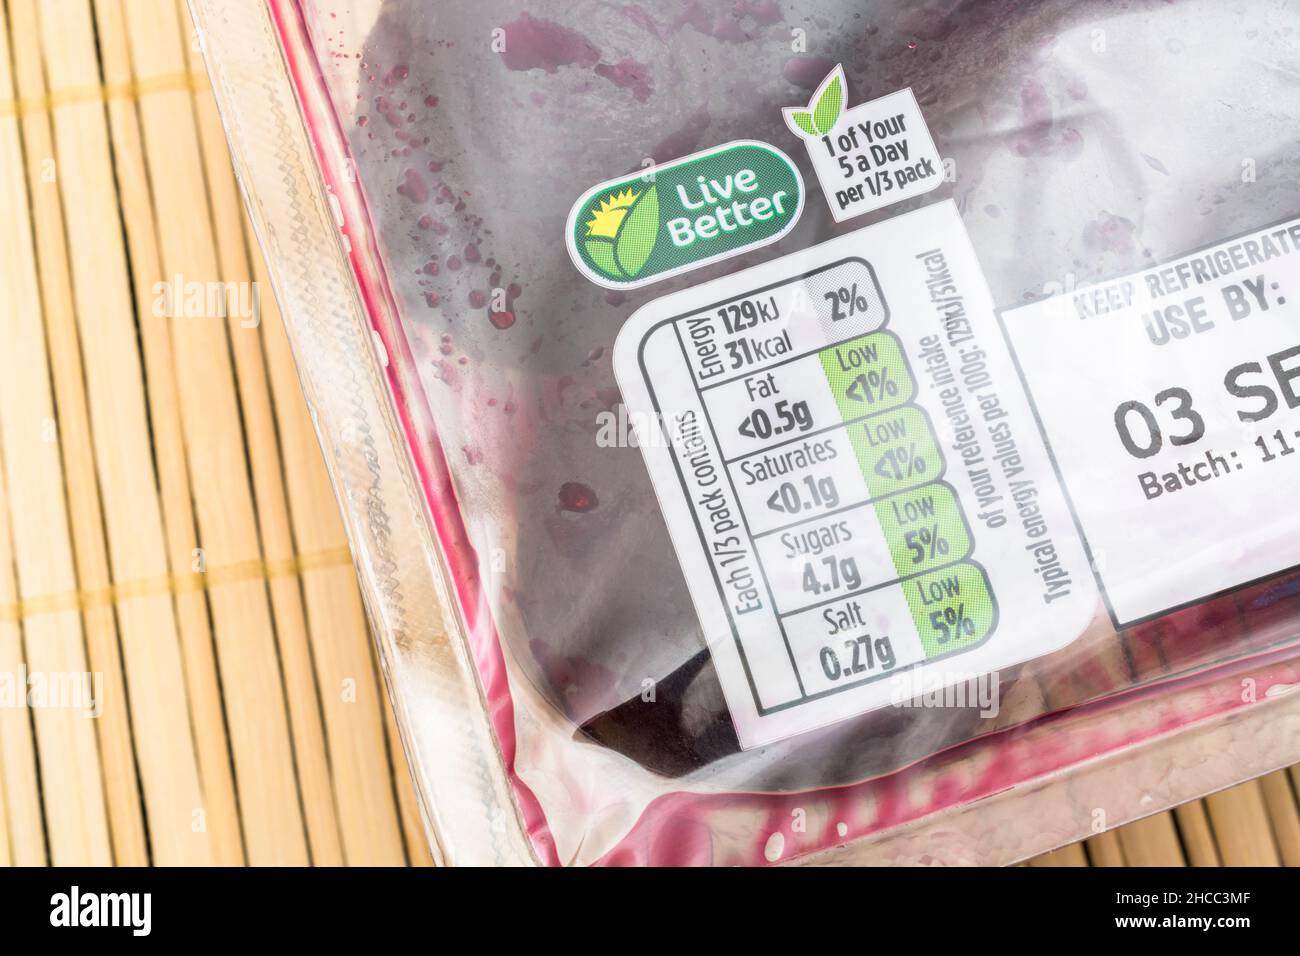 Nährwertangaben auf Packung ASDA Supermarkt Eigenetikett gebeizt Rote Beete. Für die Kennzeichnung von Nährstoffen, Kunststoffverpackungen Stockfoto